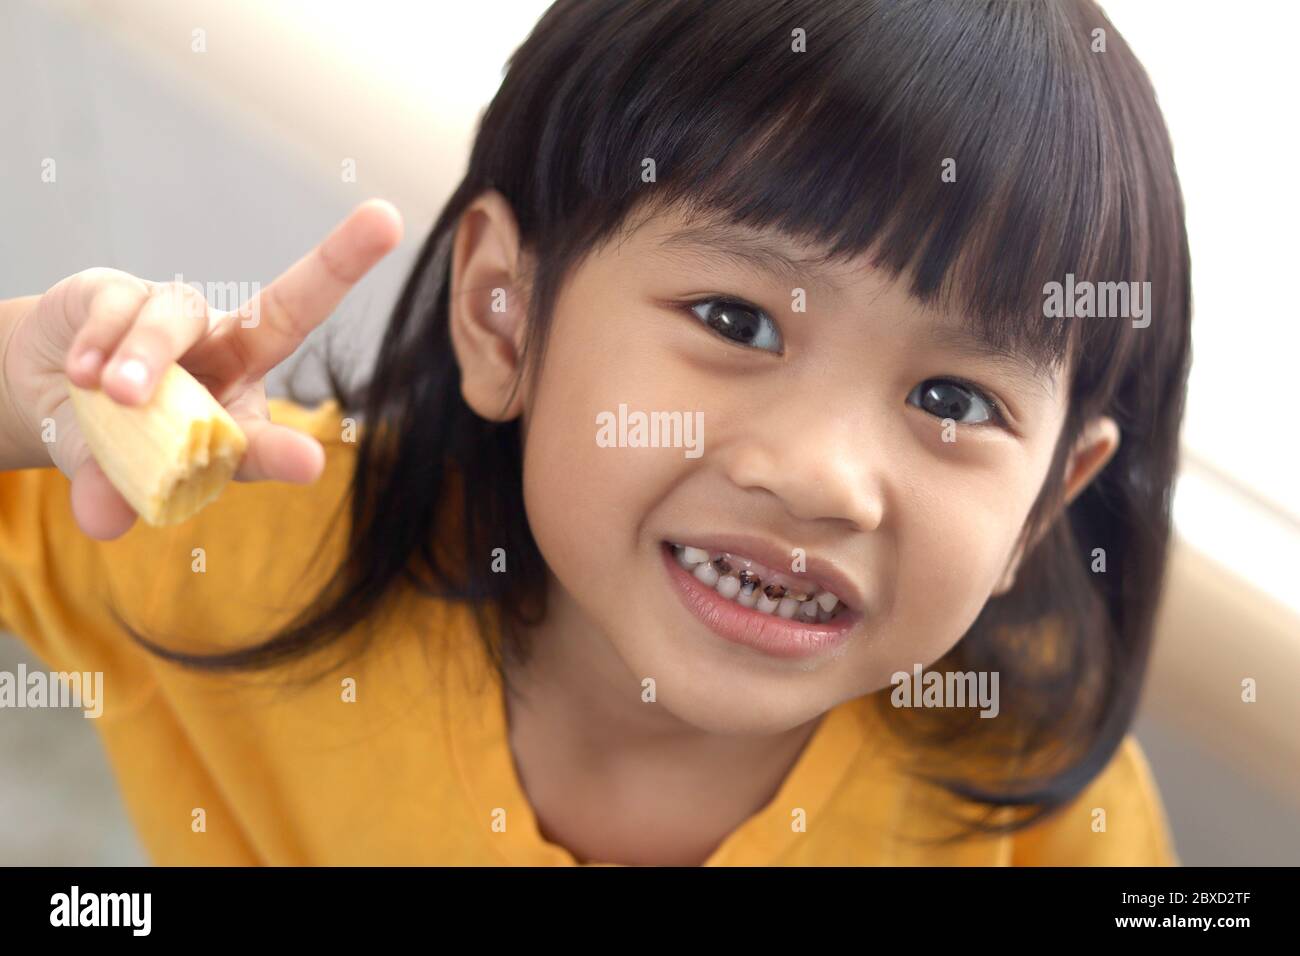 Petite fille asiatique montrant sa bouche ouverte pleine de caries dents de carie carie carie. Médecine dentaire et soins de santé. Caries à partir d'un âge précoce en raison de trop de CA sucré Banque D'Images